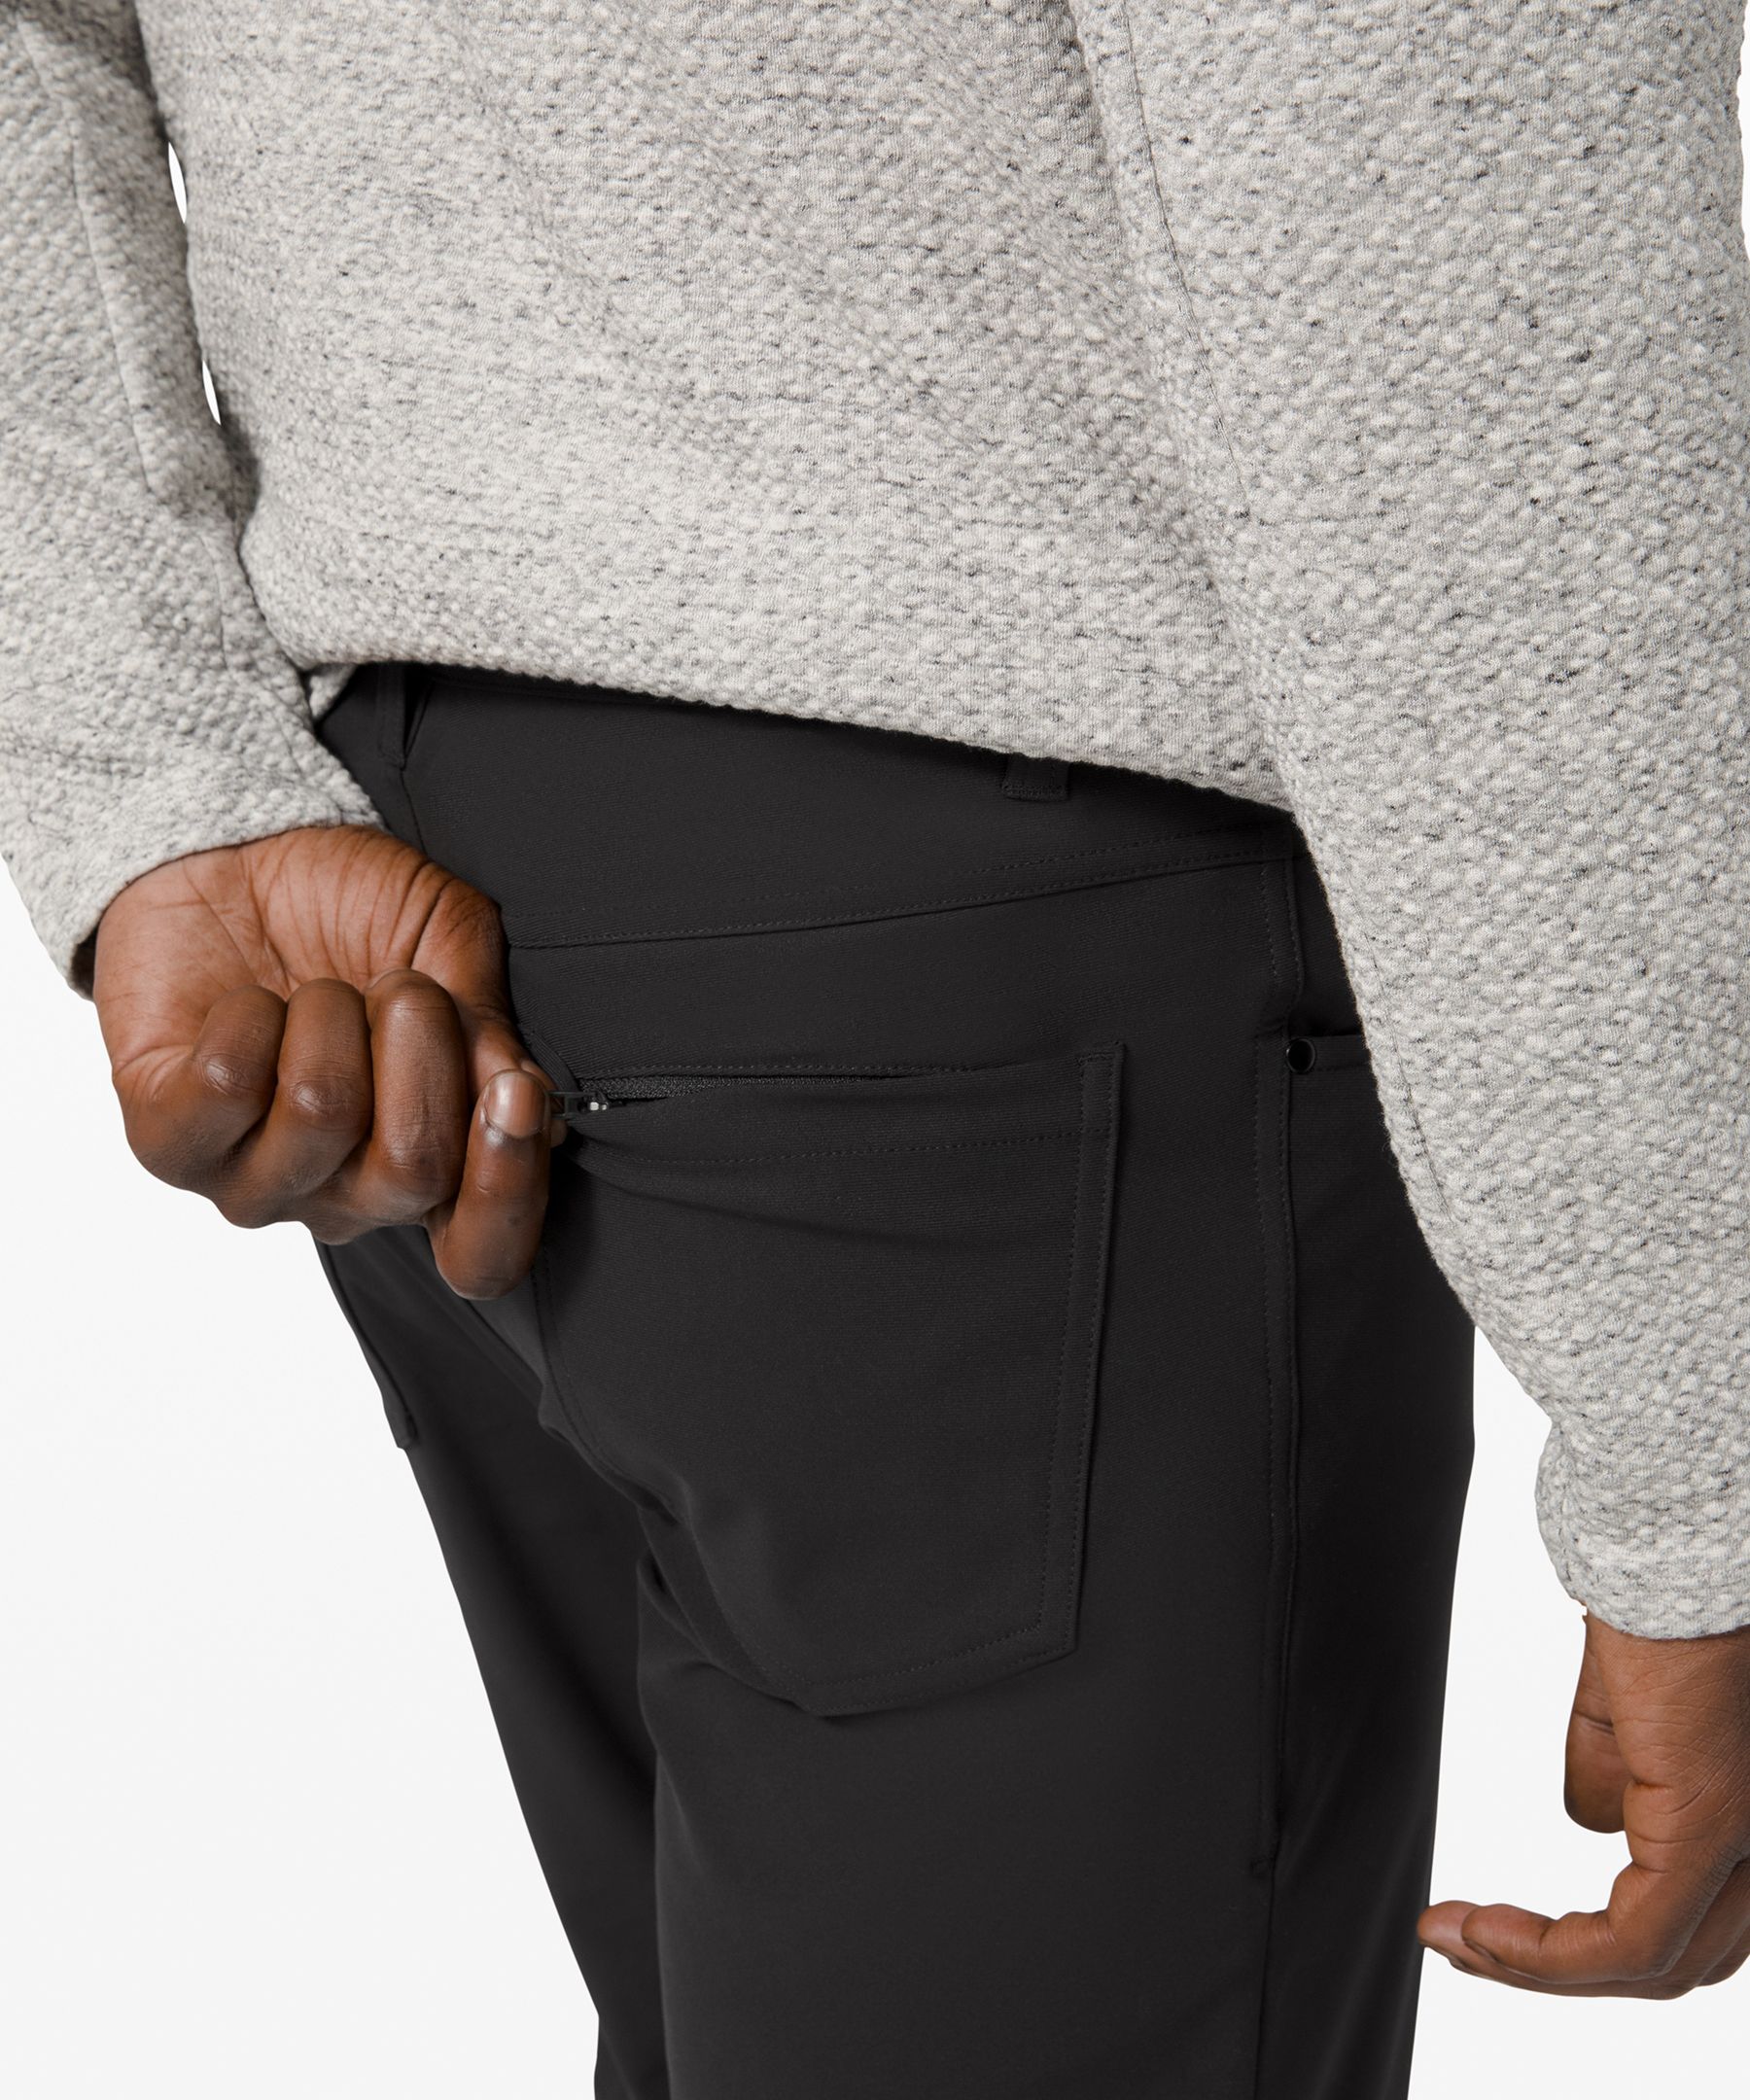 ABC Classic-Fit 5 Pocket Pant 32"L *Warpstreme | Men's Trousers